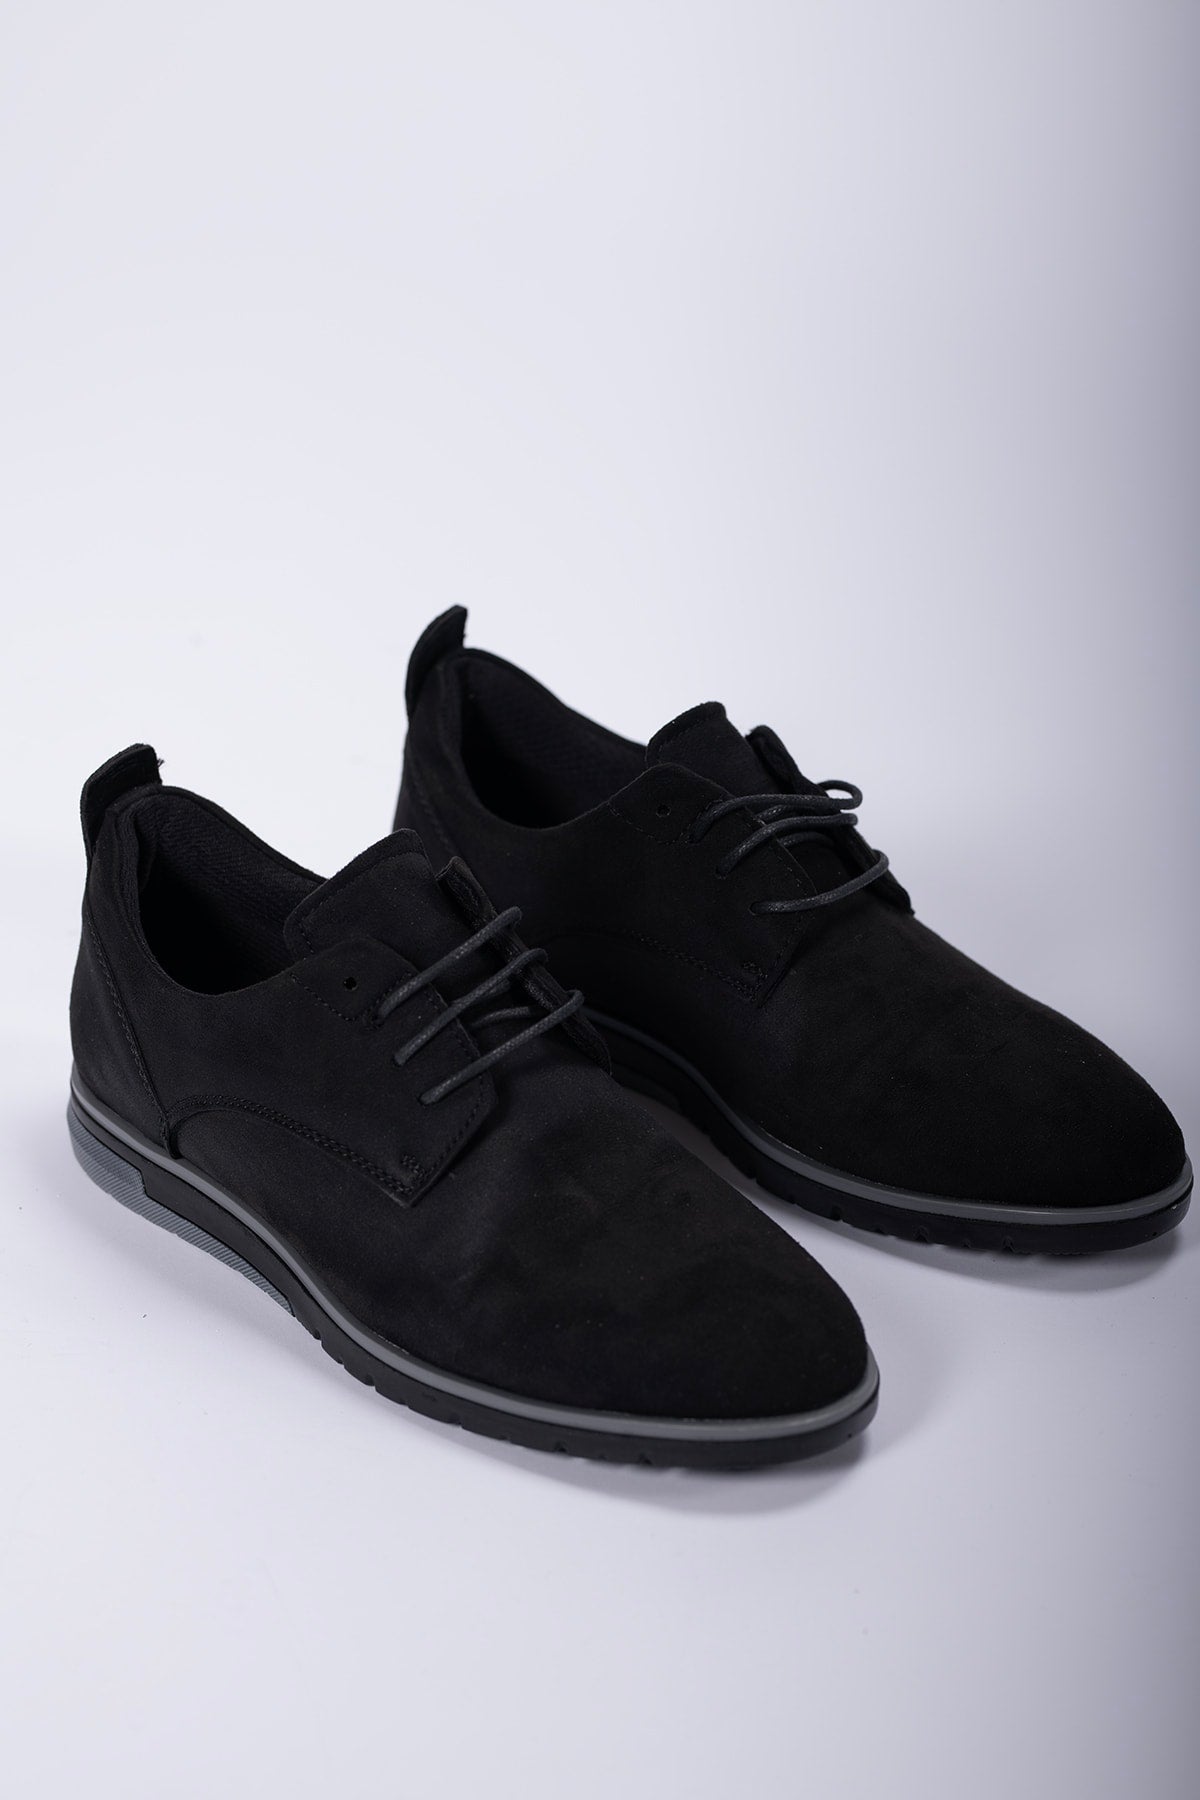 Men's Casual Shoes 0012206 Suede Black Black